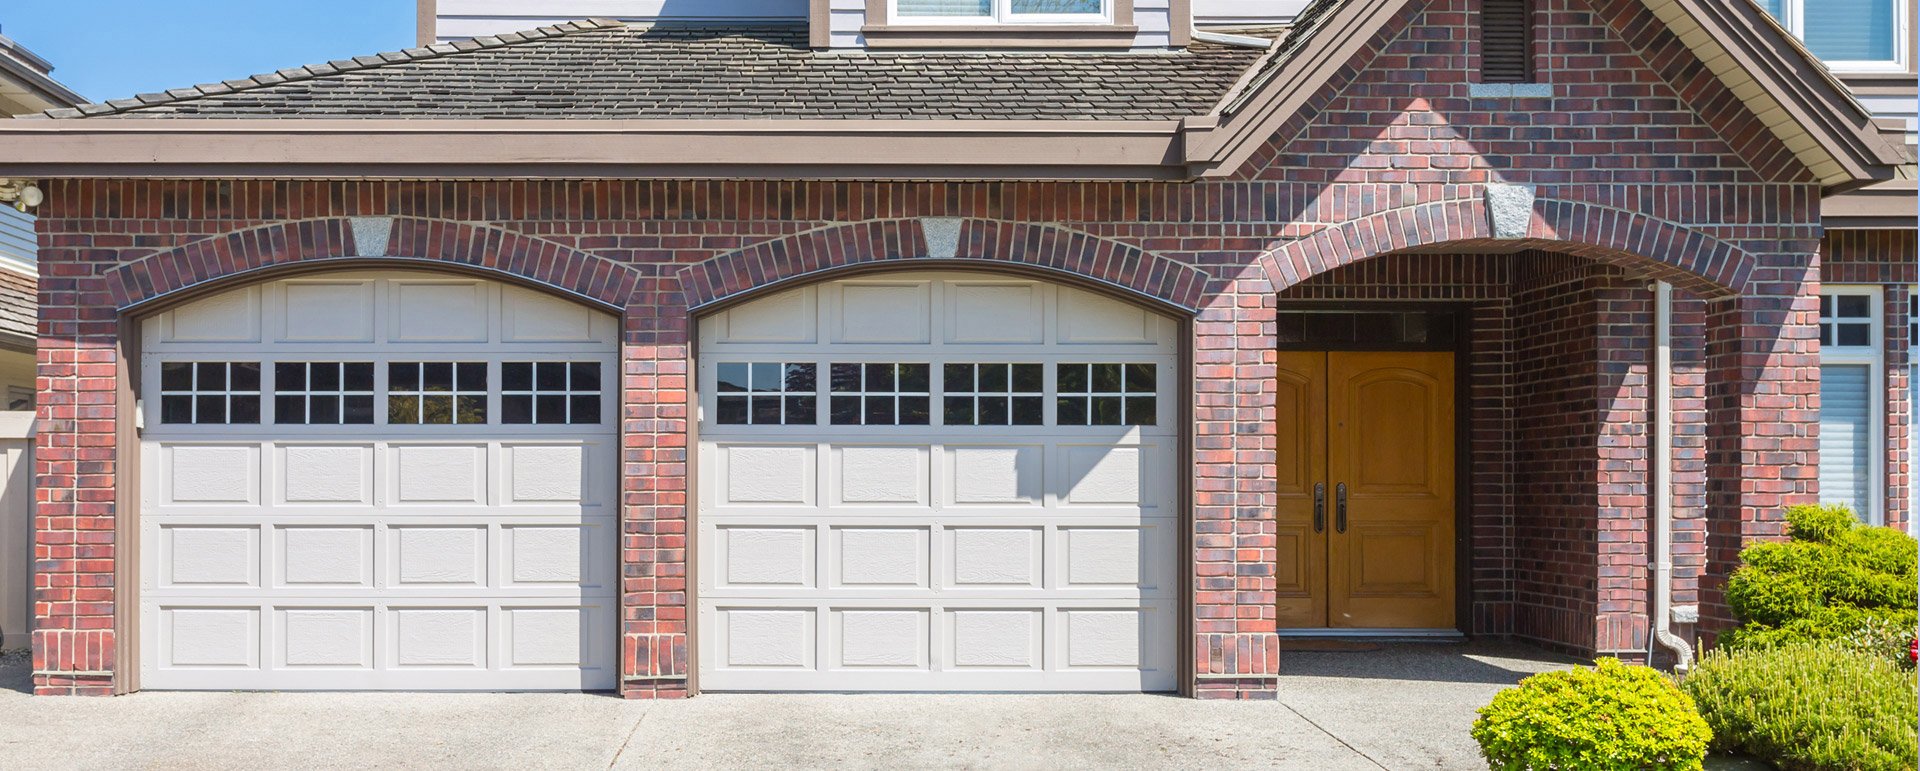 garage door for your home